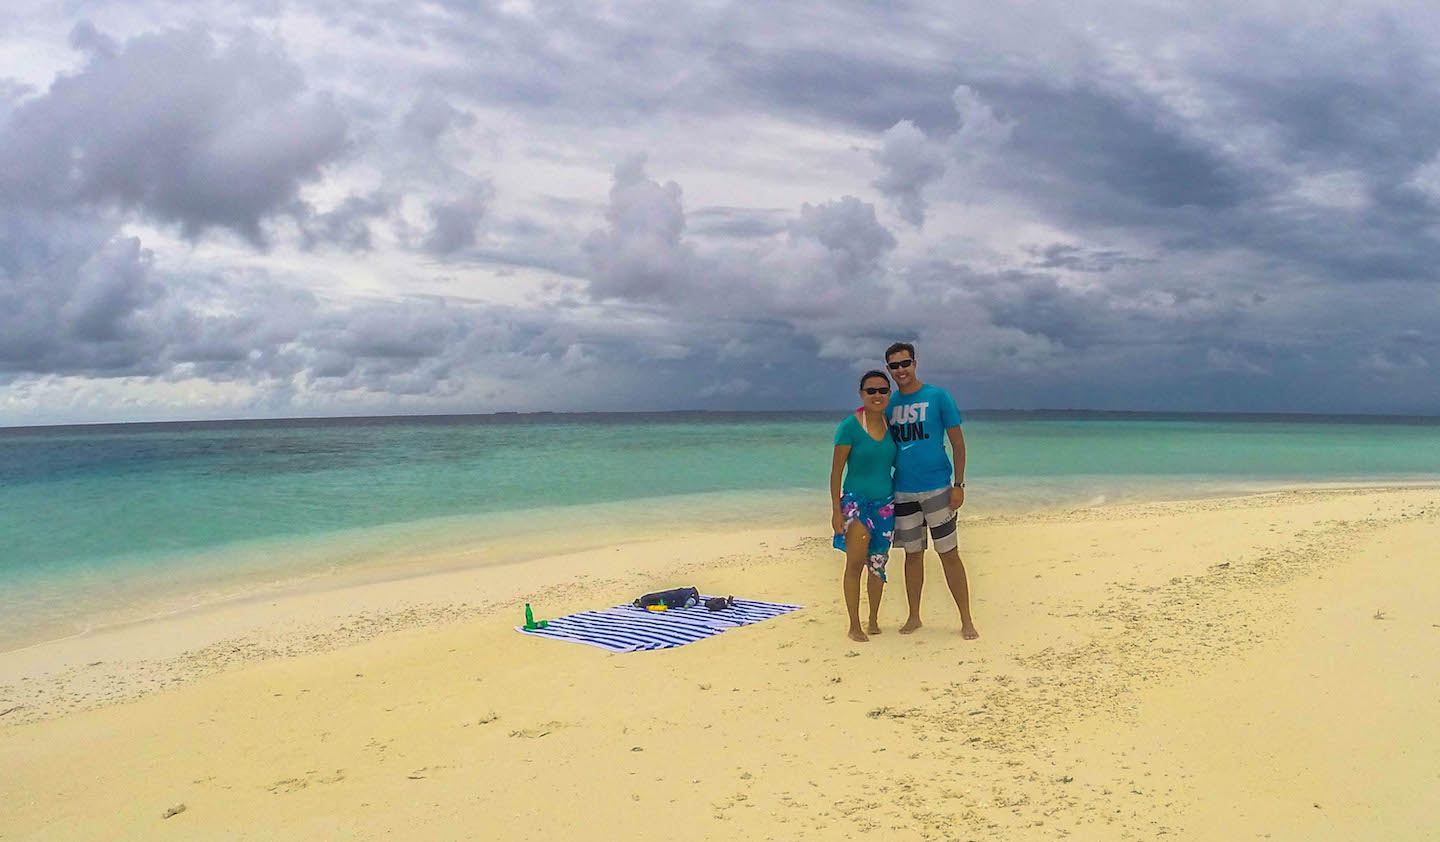 Julie and Carlos at the sandbank, Maldives